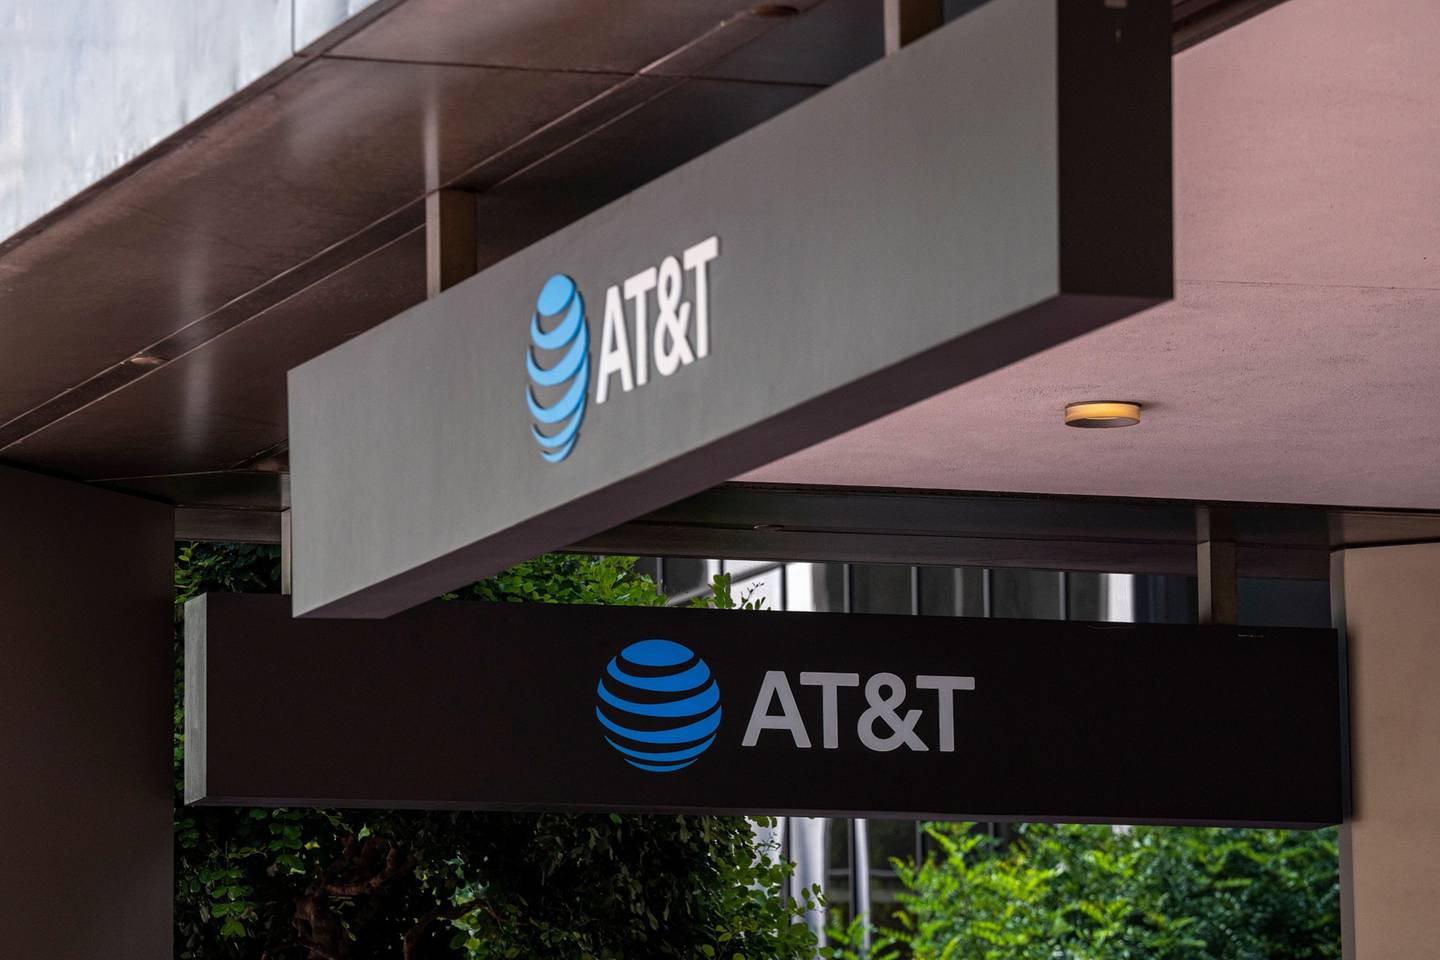 Actualmente AT&T tiene una participación de 24% en postpago y de 30% en prepago dentro del segmento hispano en EE.UU.